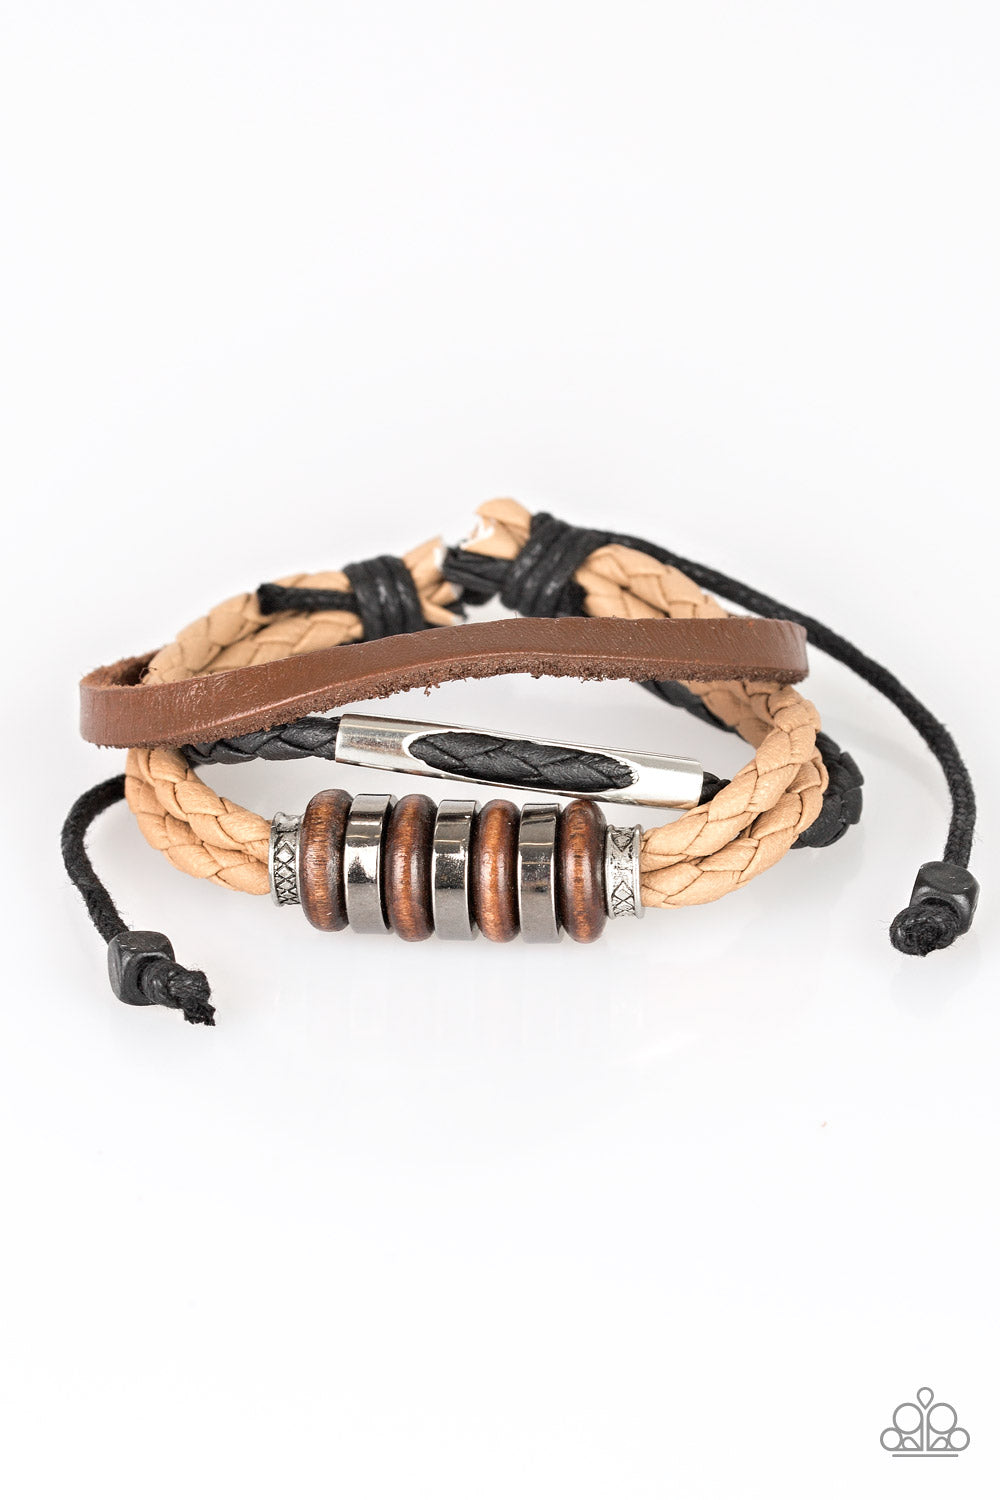 Paparazzi Sole Survivor - Brown - Urban Bracelet - $5 Jewelry With Ashley Swint